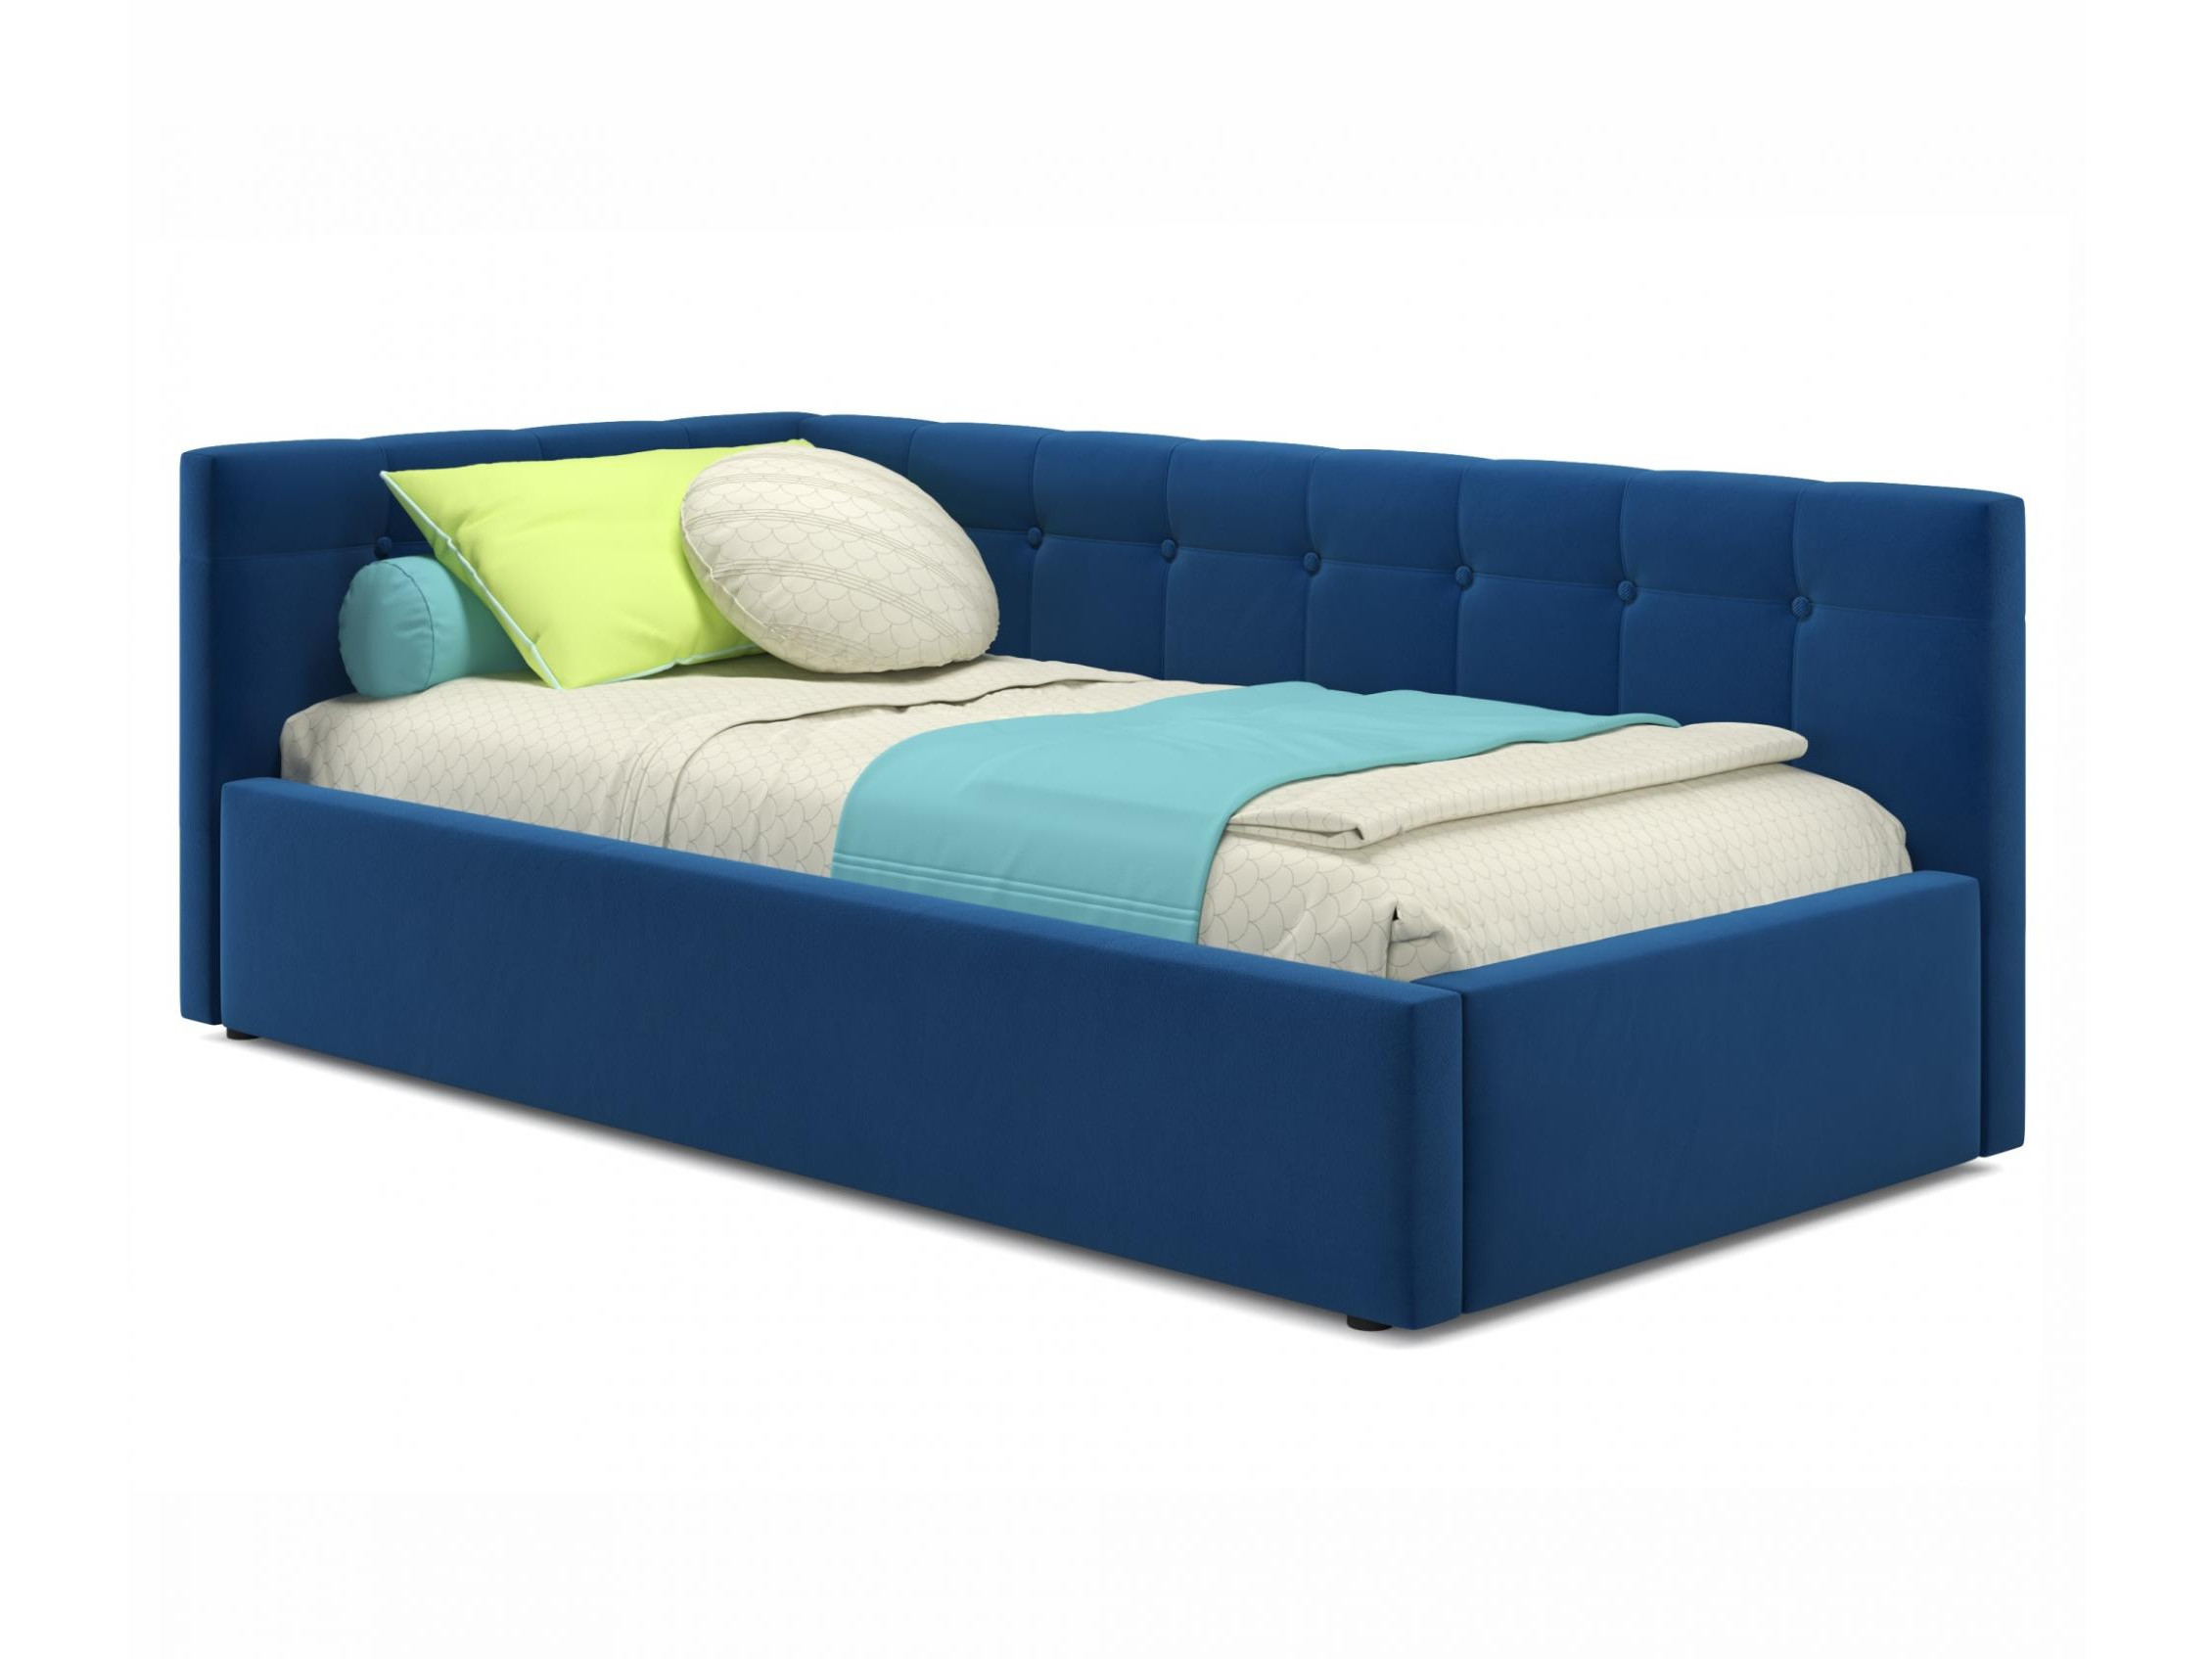 Односпальная кровать-тахта Bonna 900 синяя с подъемным механизмом и матрасом ГОСТ синий, Синий, Велюр, ДСП